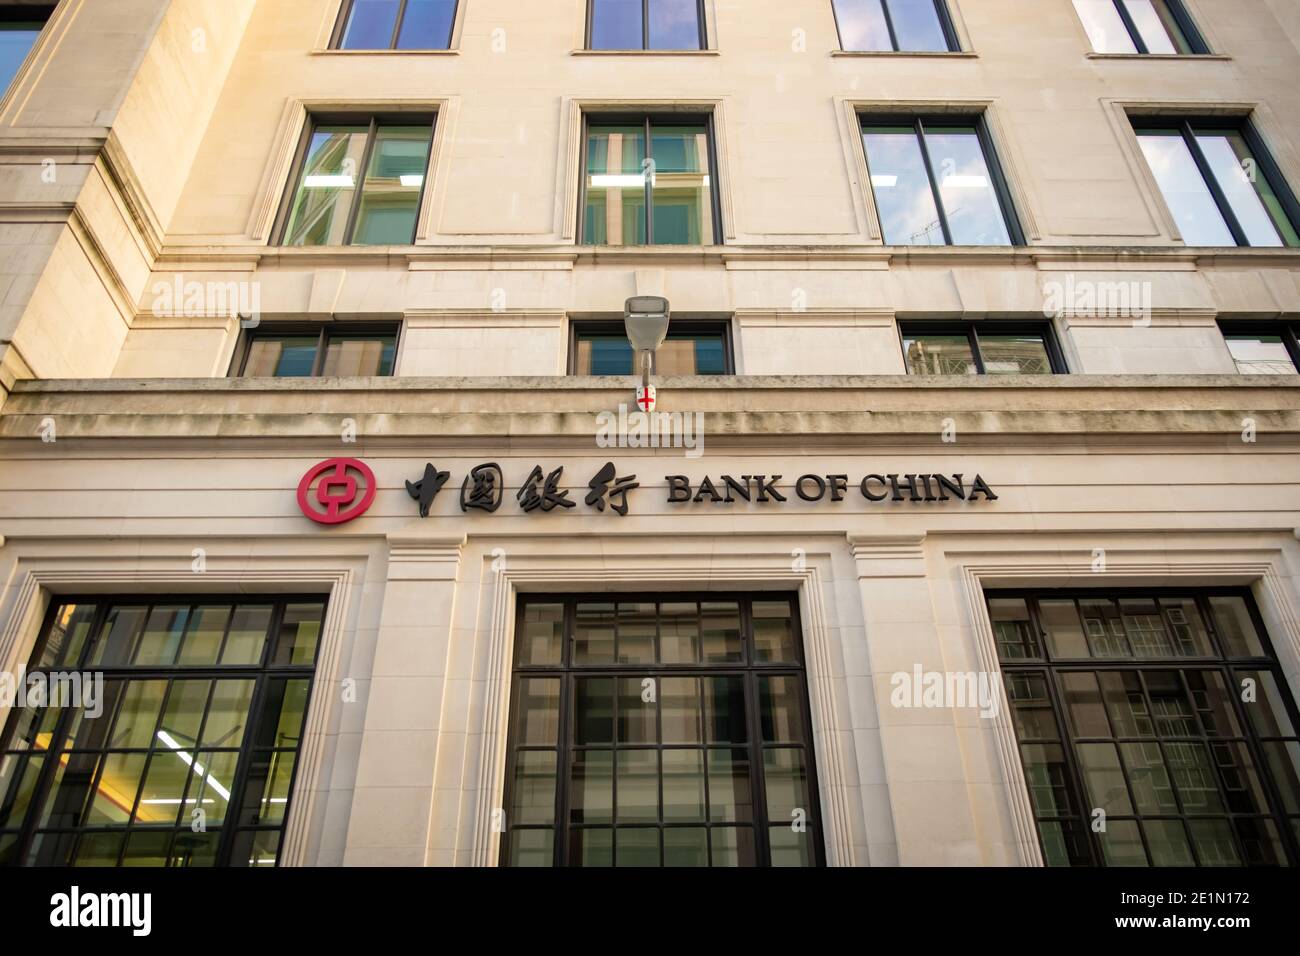 LONDRA- segnaletica esterna della Banca della Cina- filiale londinese della Banca commerciale statale cinese Foto Stock